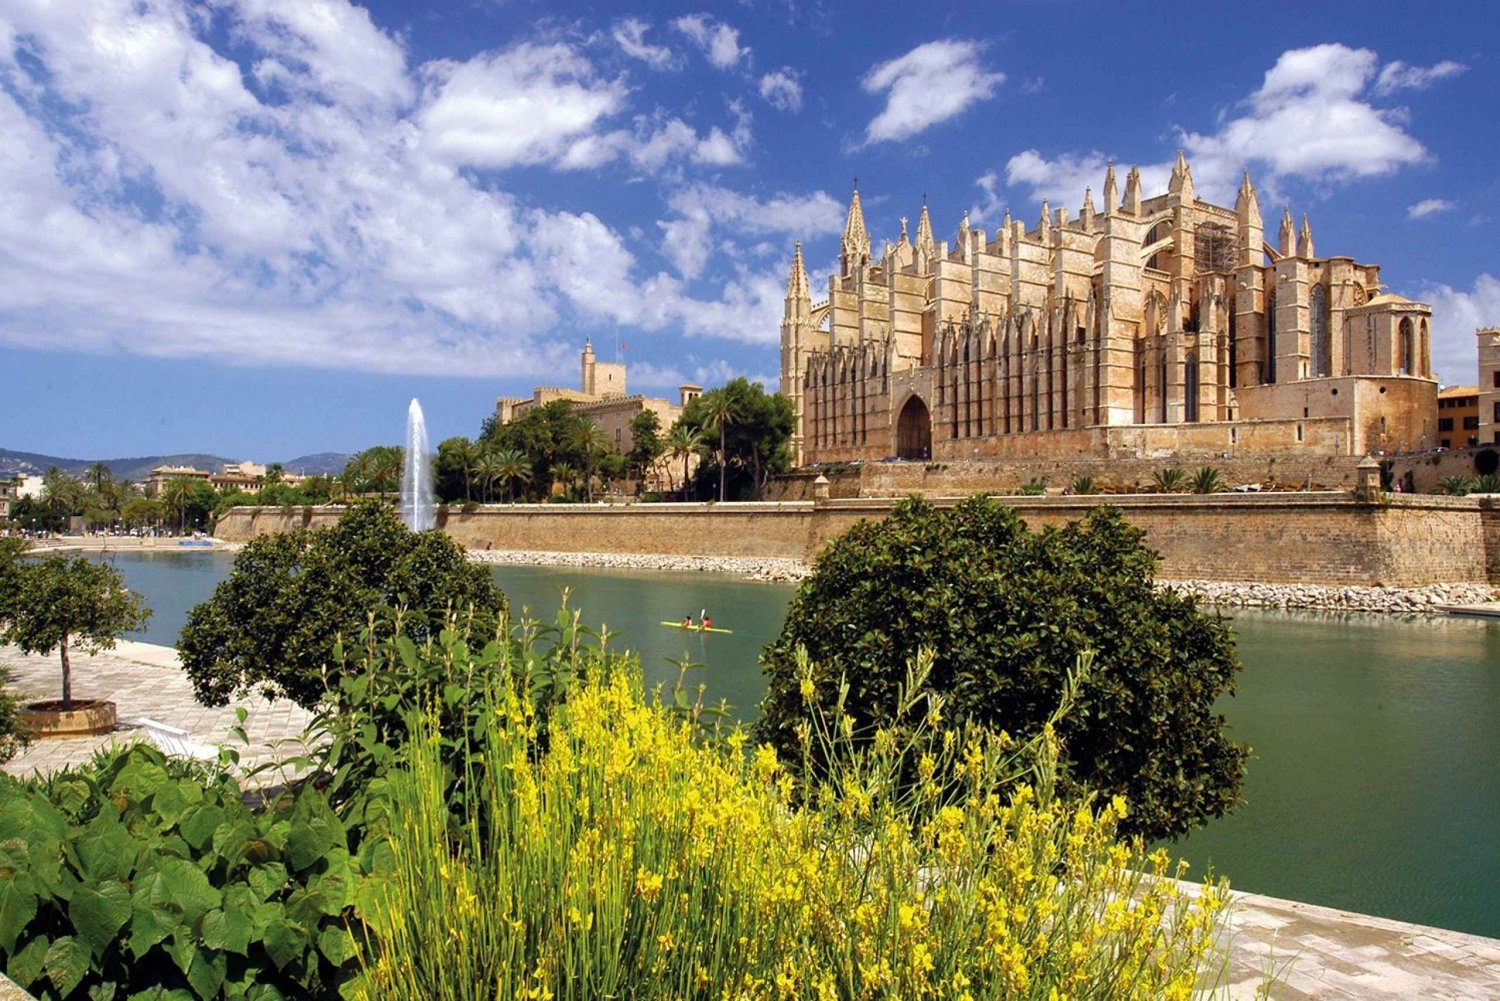 Palma di Maiorca: Tour della città a piedi con la Cattedrale